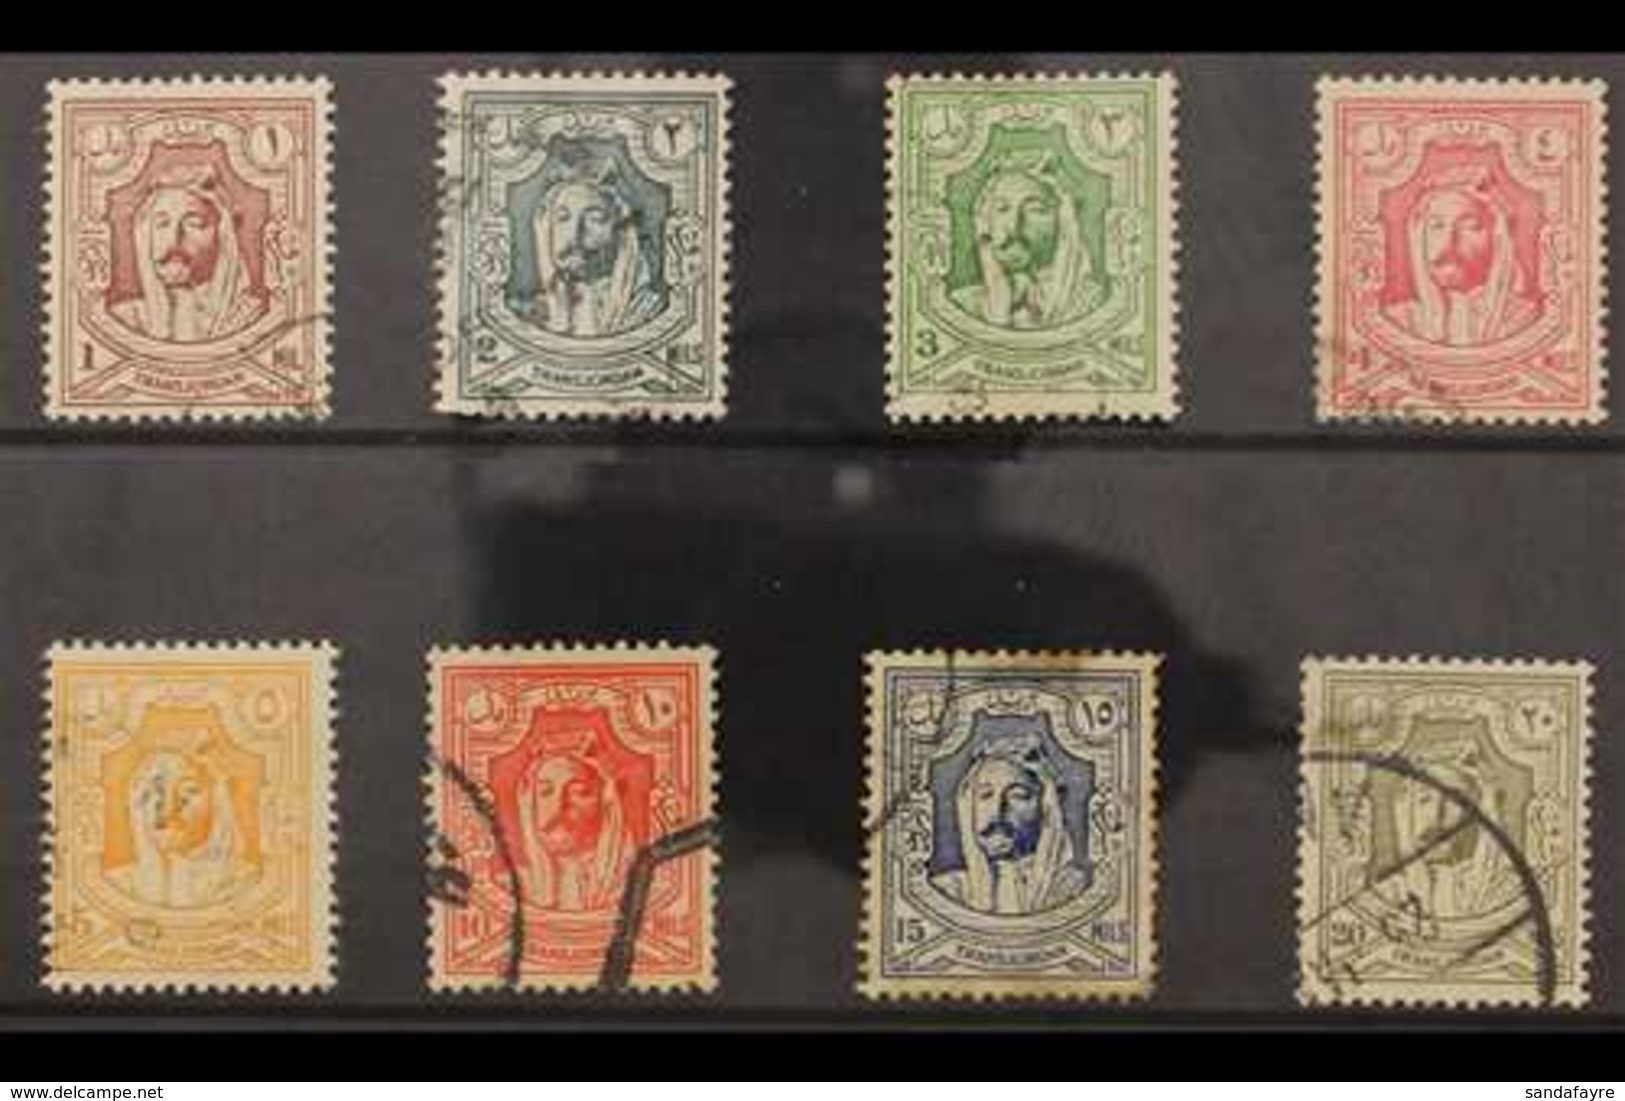 1942  Emir Set, SG 222/29, Used (8 Stamps) For More Images, Please Visit Http://www.sandafayre.com/itemdetails.aspx?s=64 - Jordanien